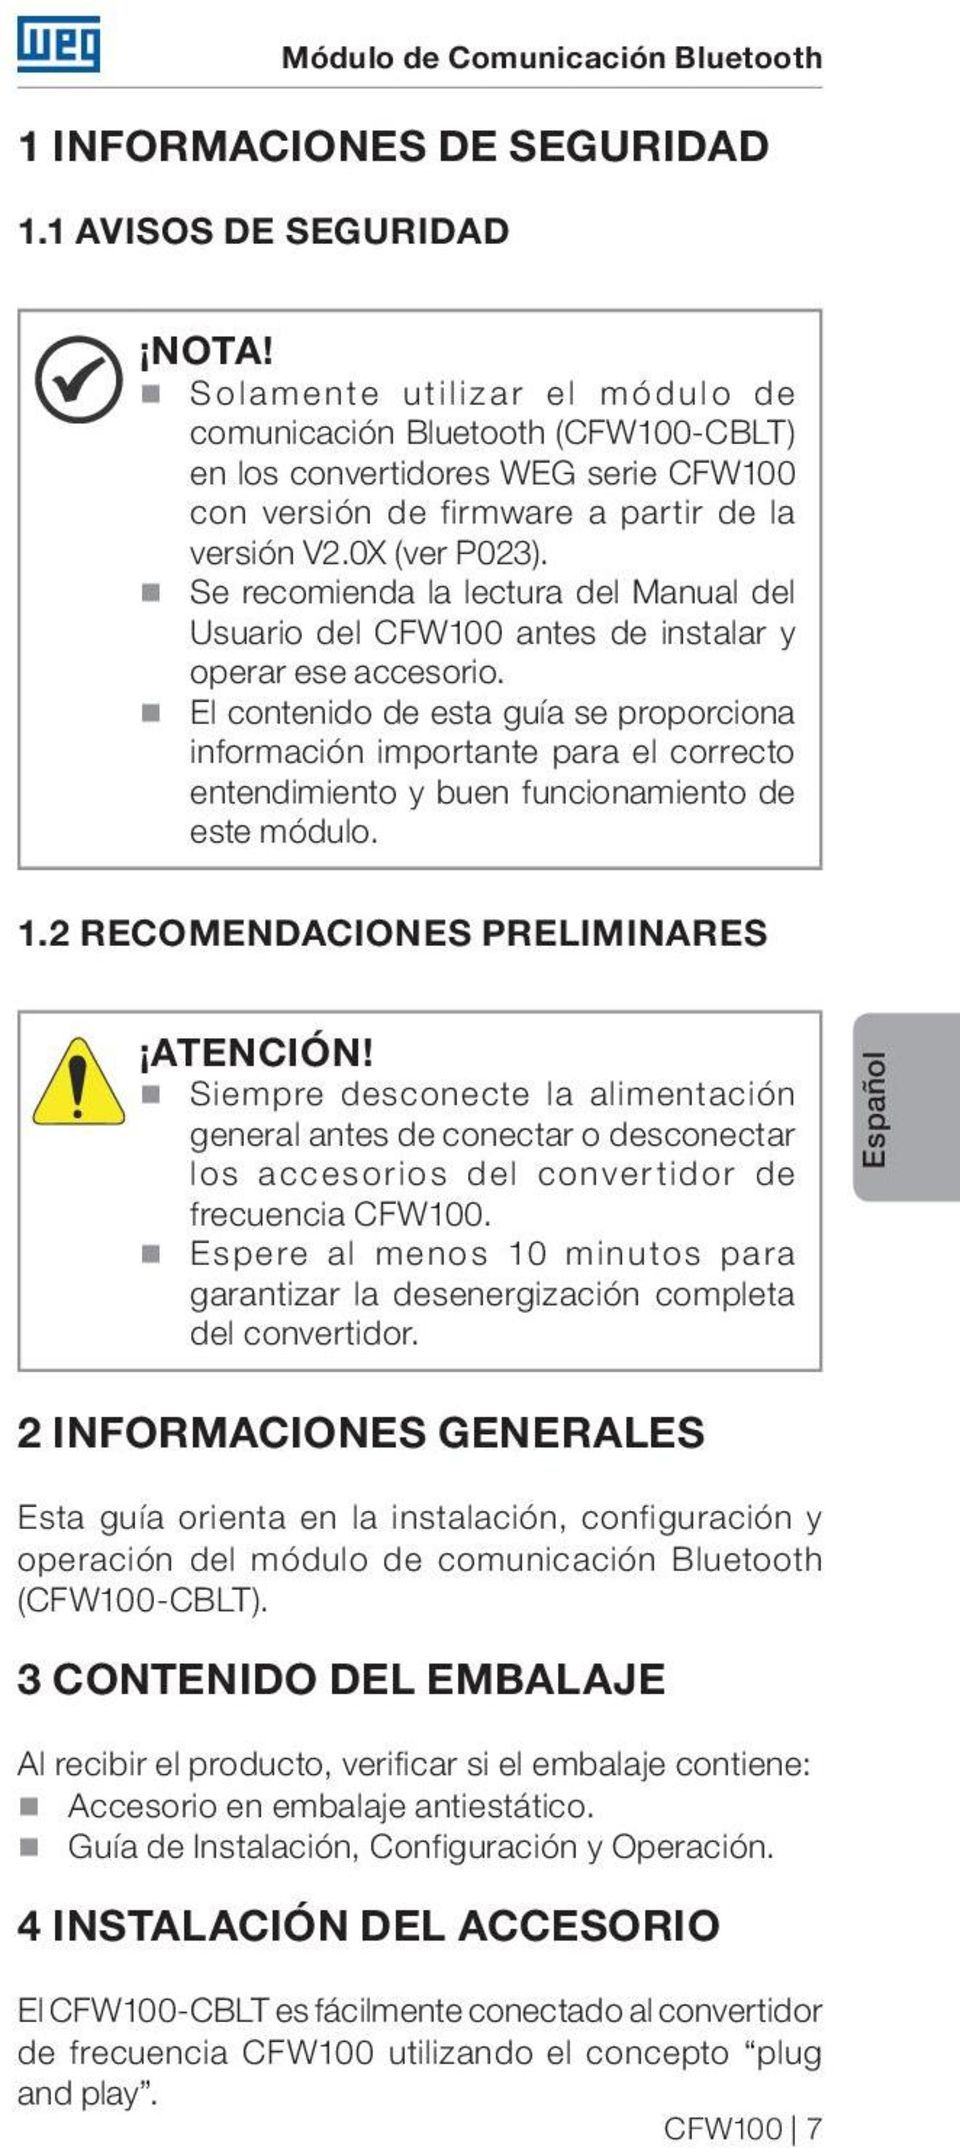 Se recomienda la lectura del Manual del Usuario del CFW100 antes de instalar y operar ese accesorio.